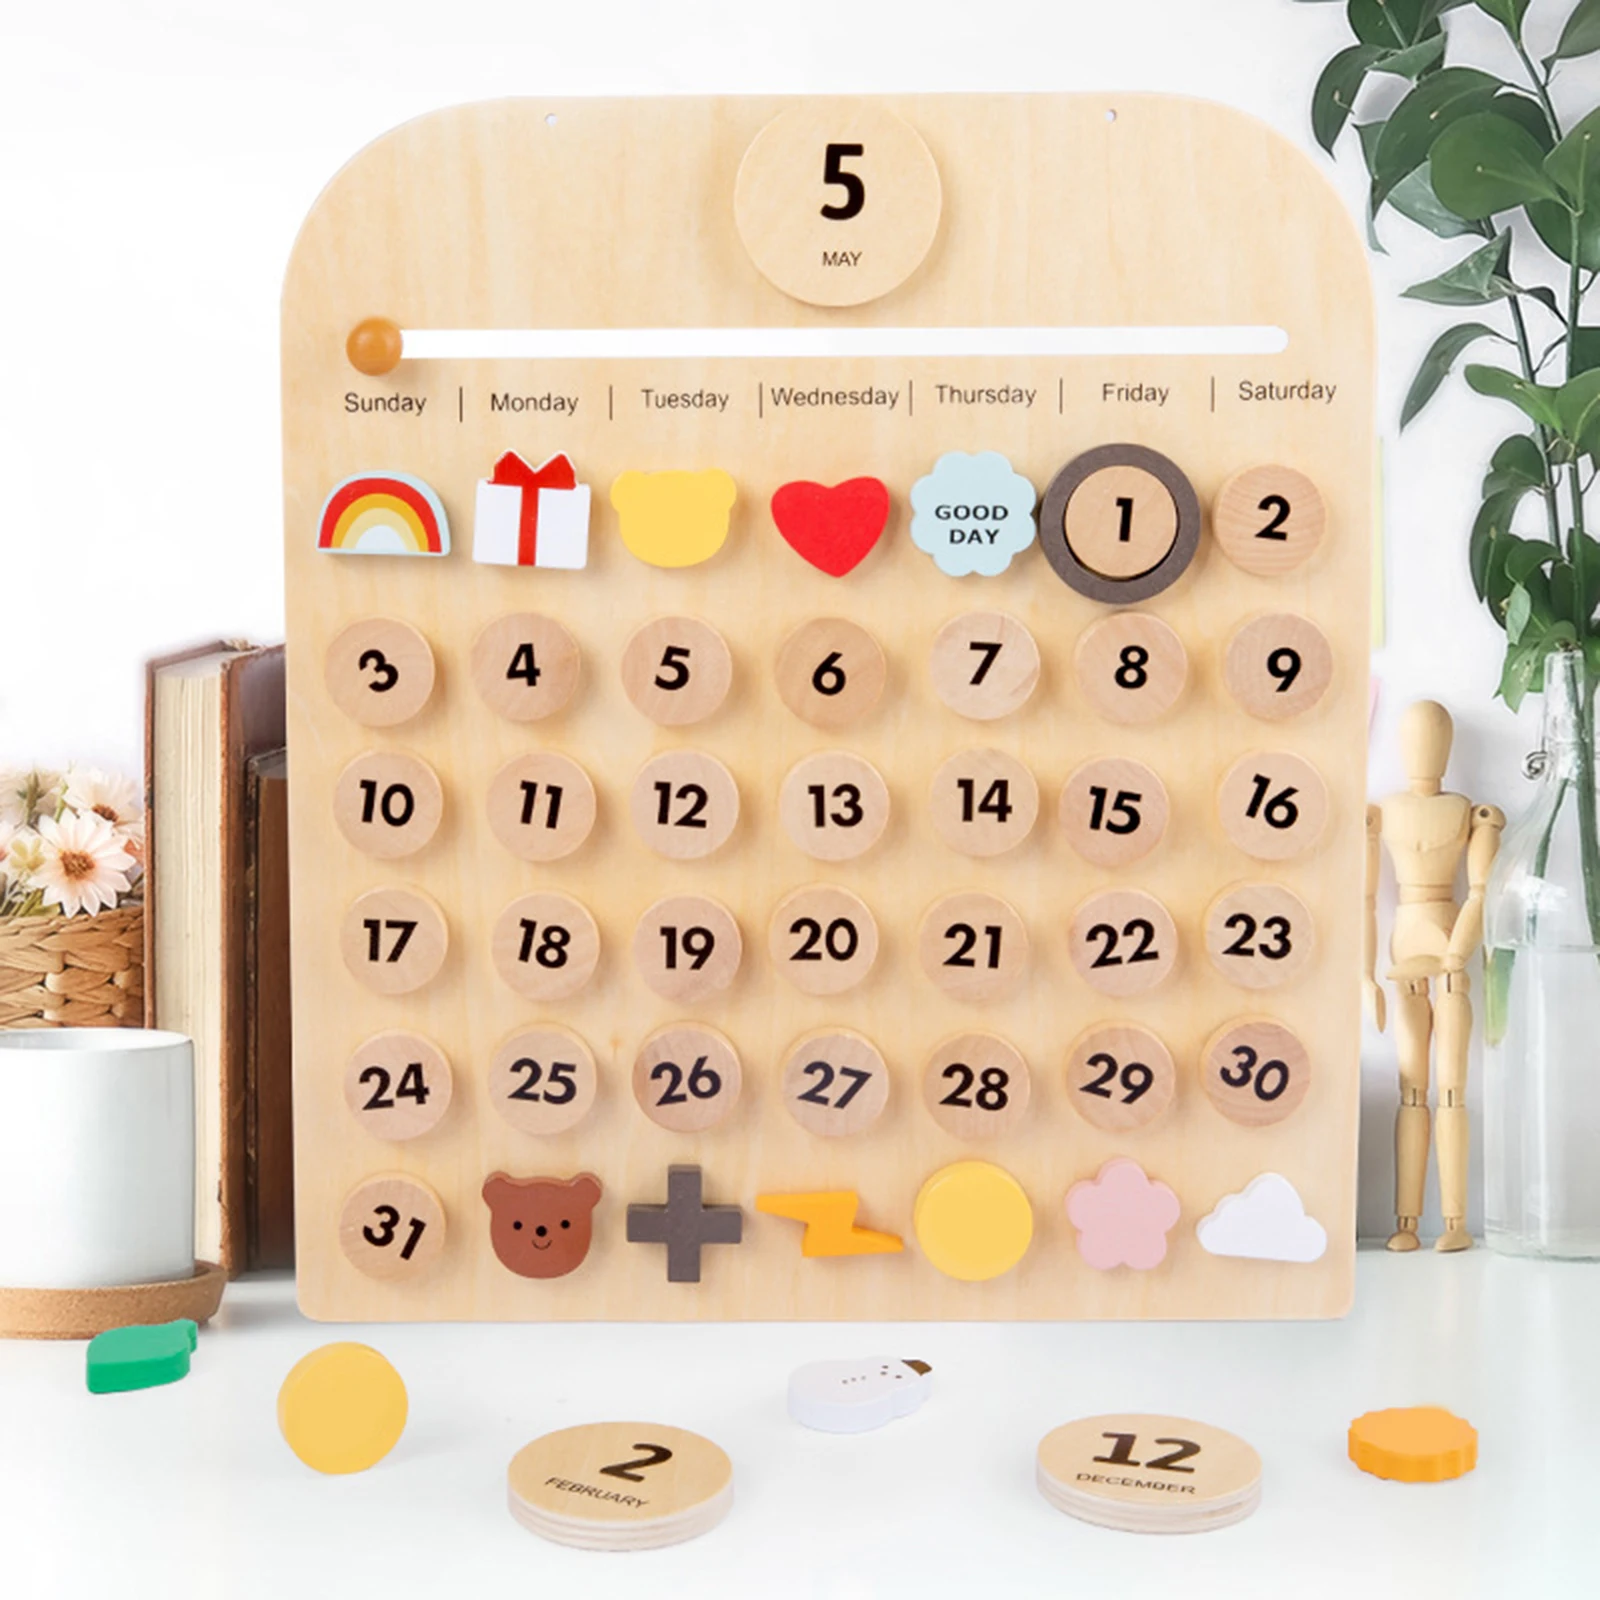 Wooden Desk Calendar Date Days Weather Montessori Learning Calendar Homeschool